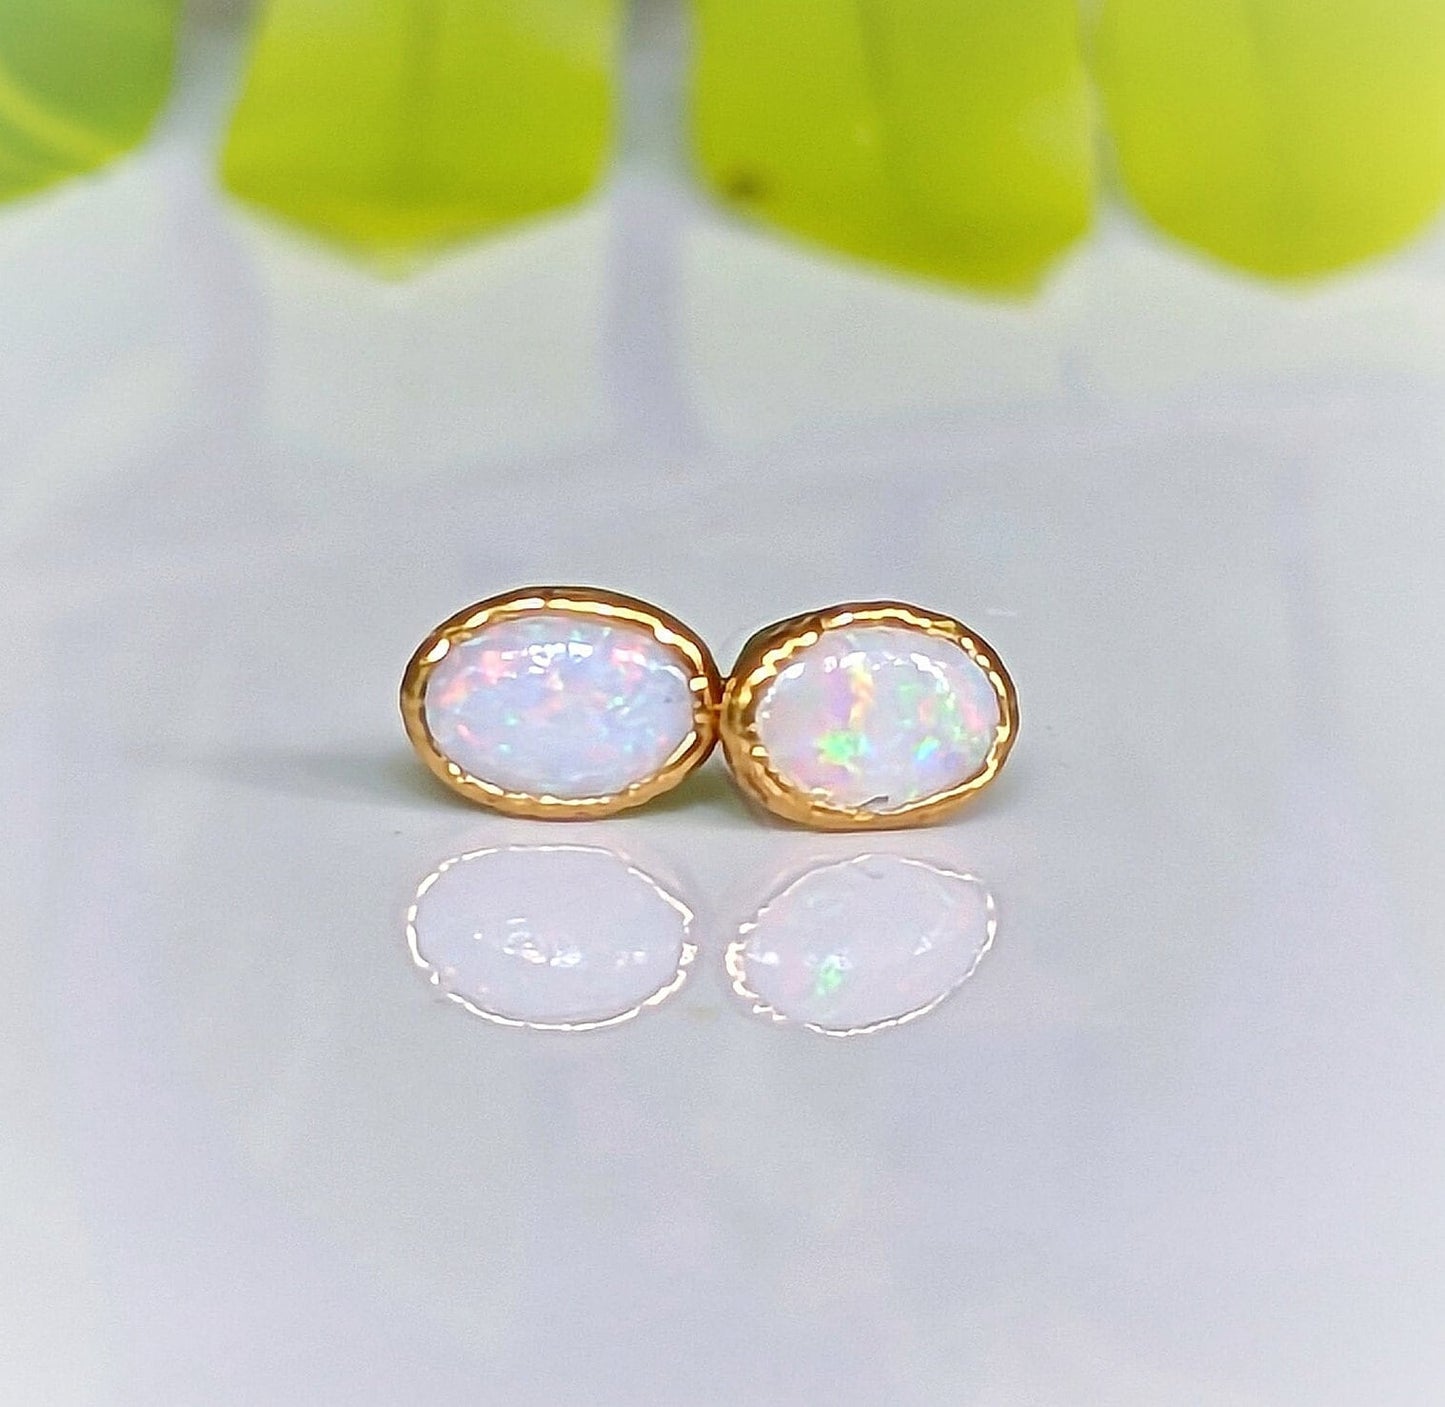 White Australian Opal stud earrings in unique 18k Gold setting